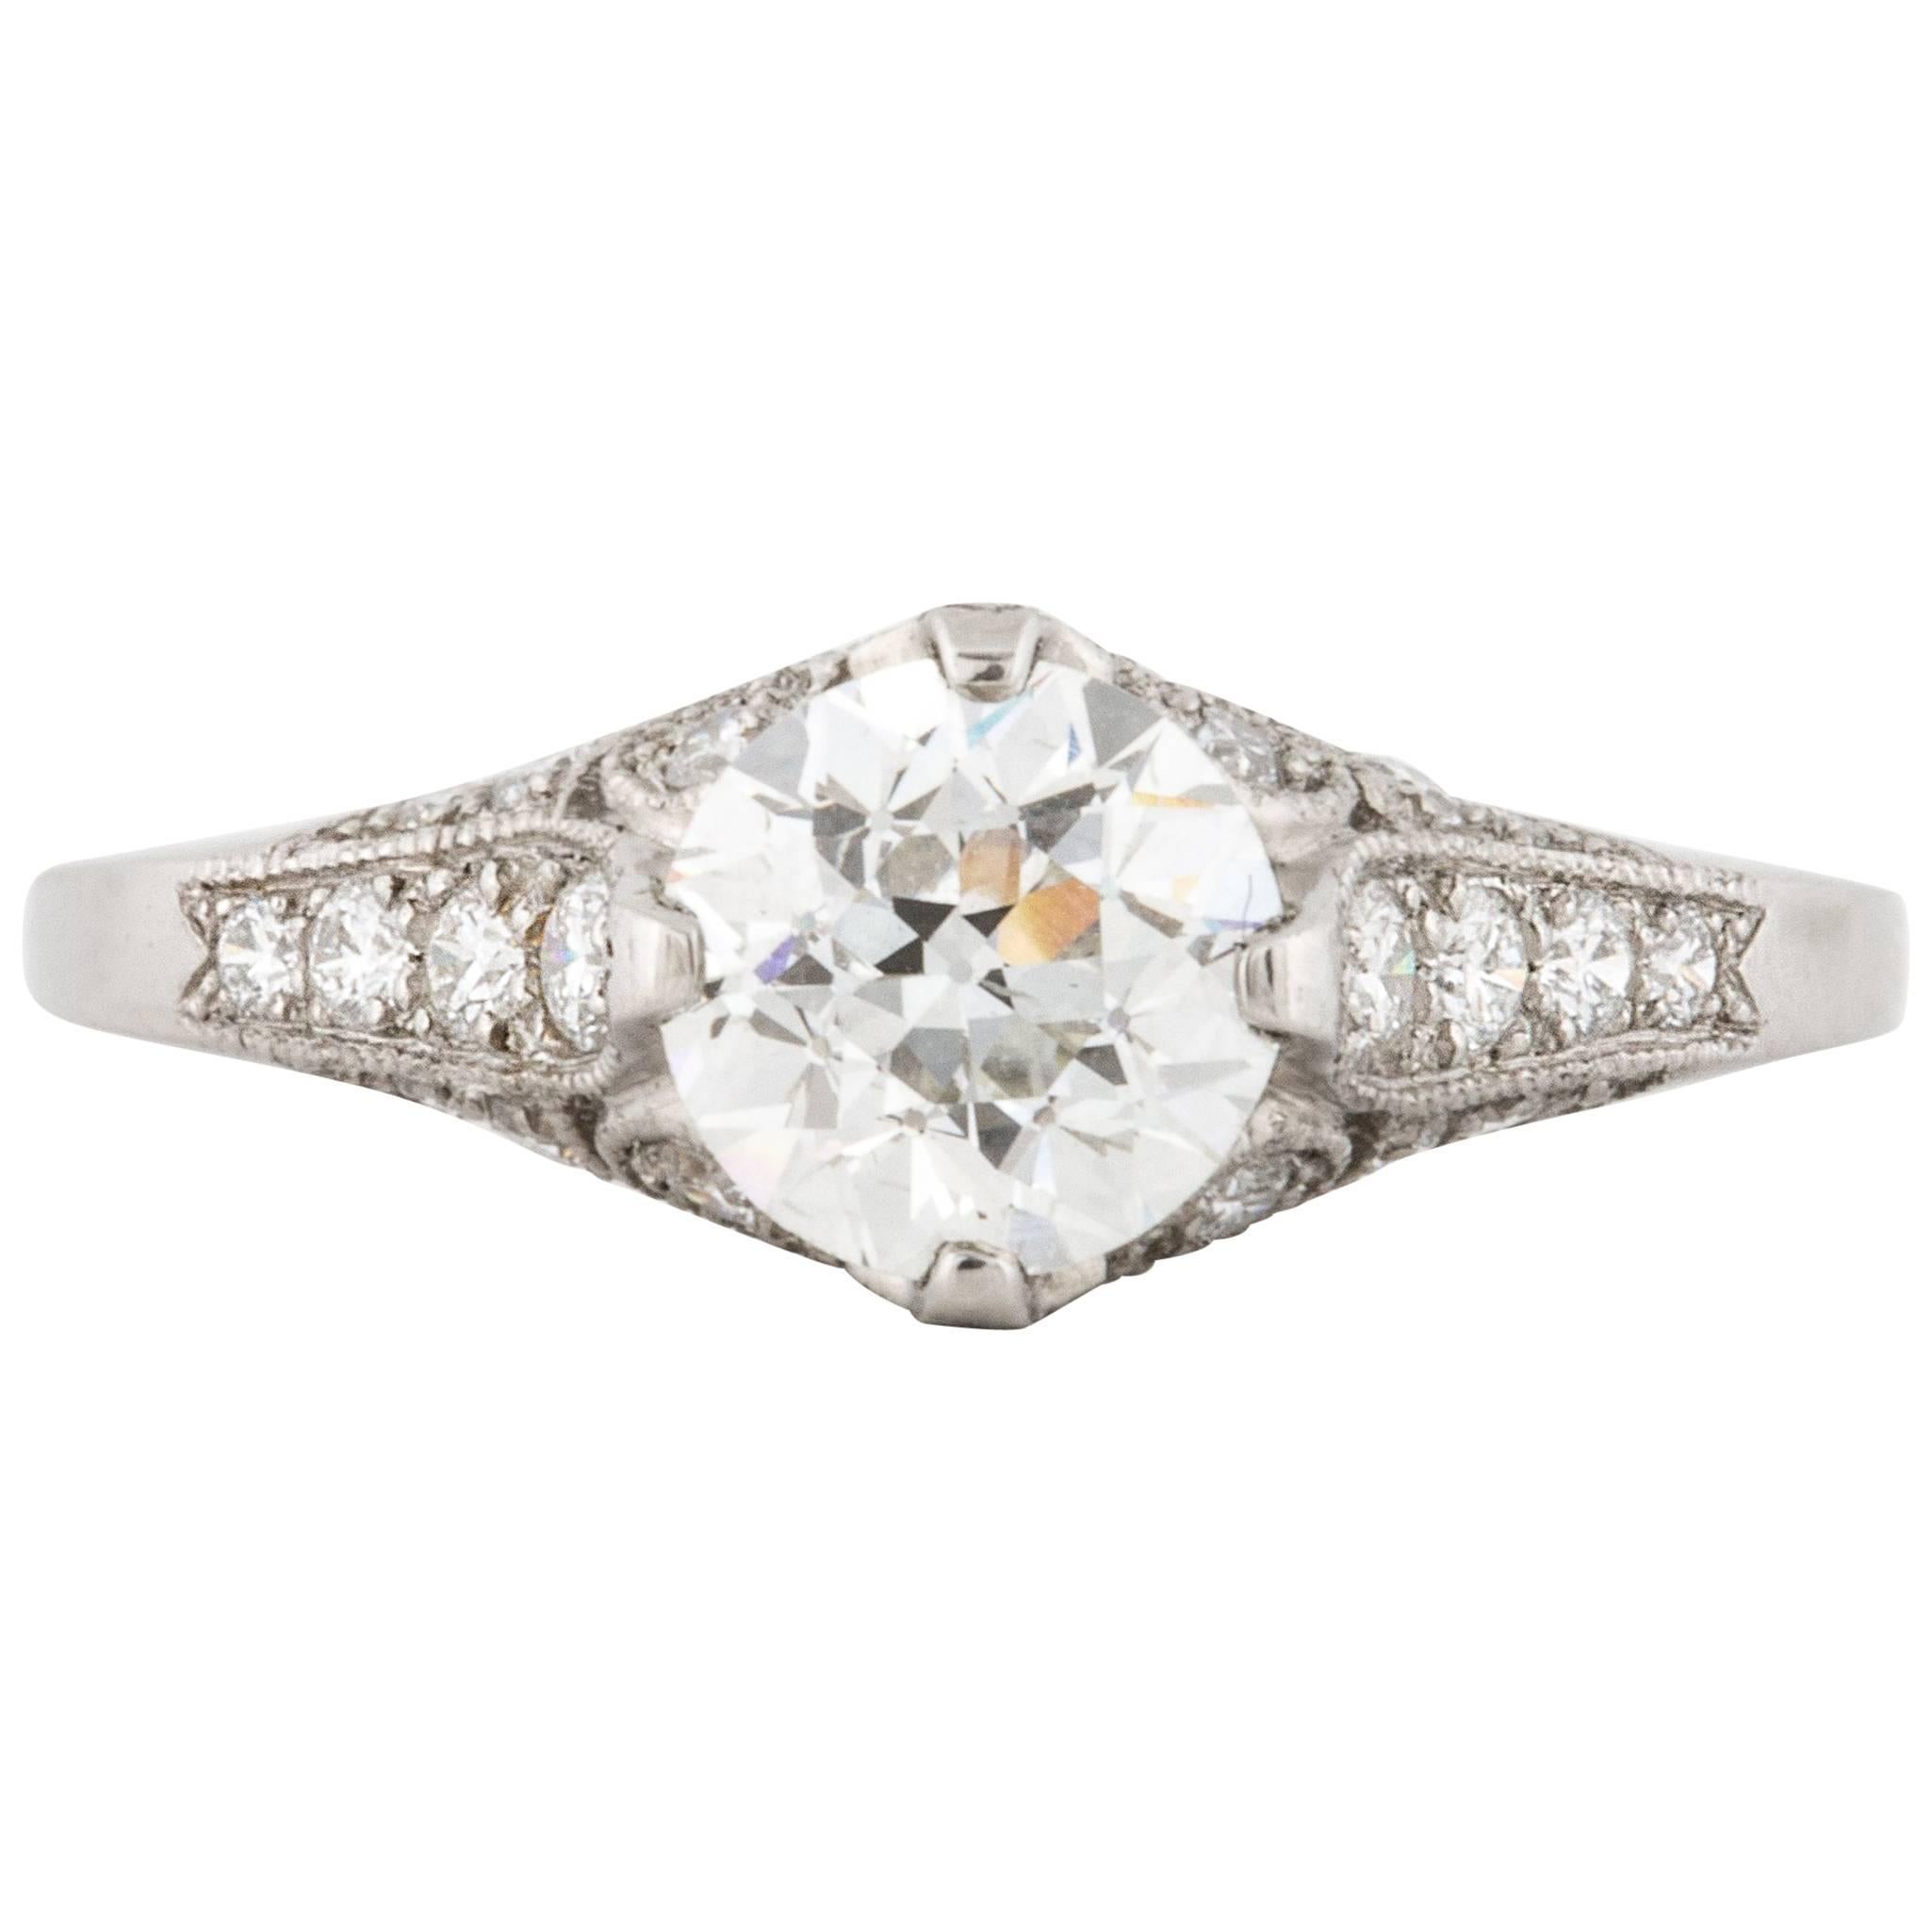 GIA Certified 0.98 Carat Diamond Engagement Ring in Platinum